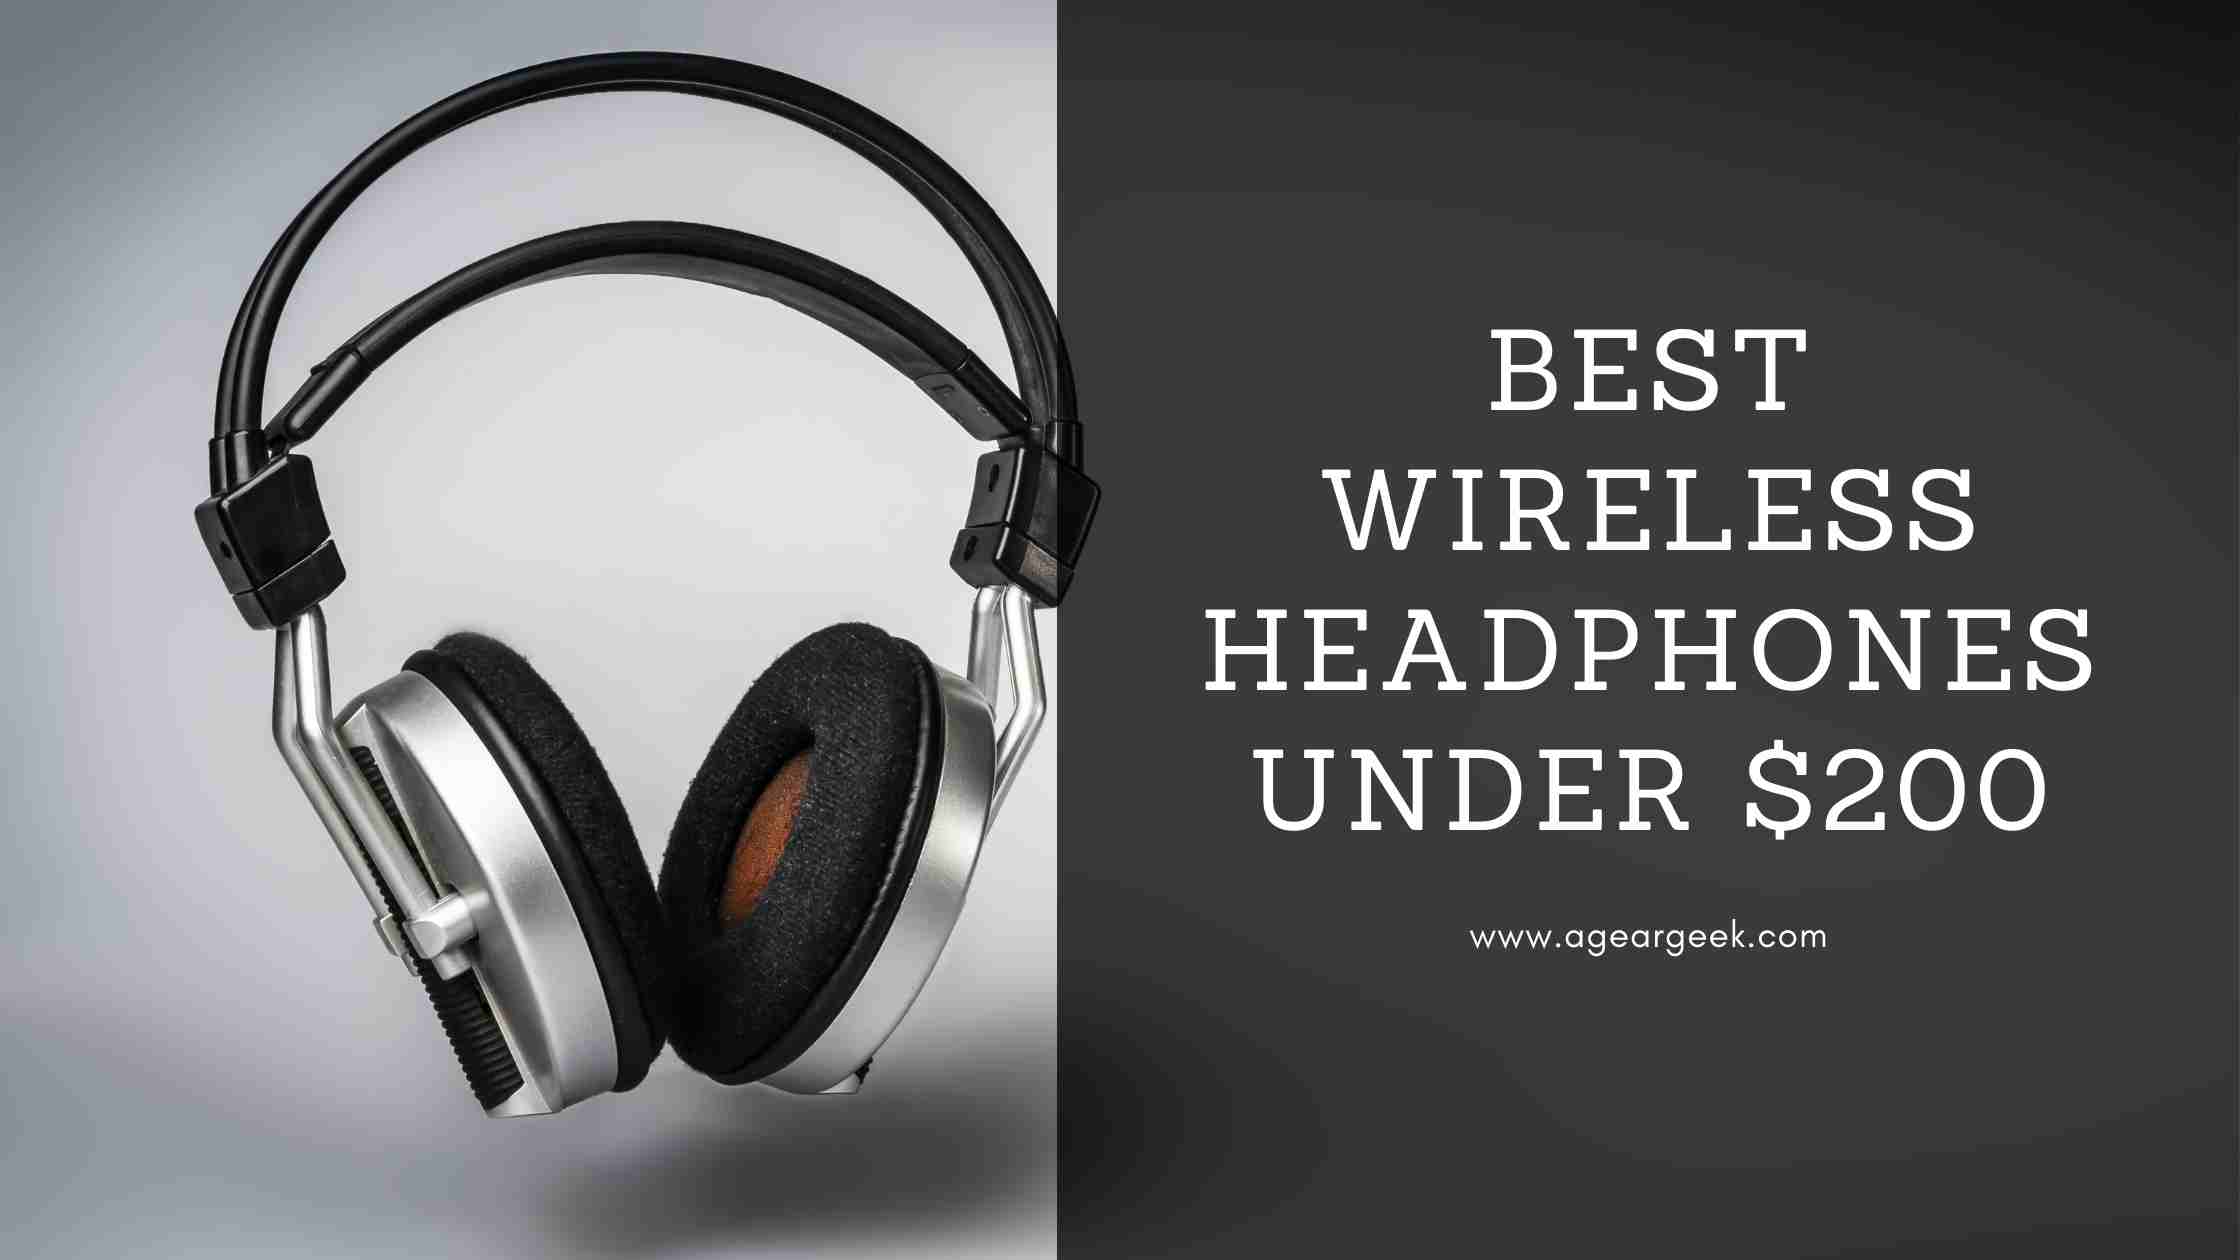 Best Wireless headphones under $200